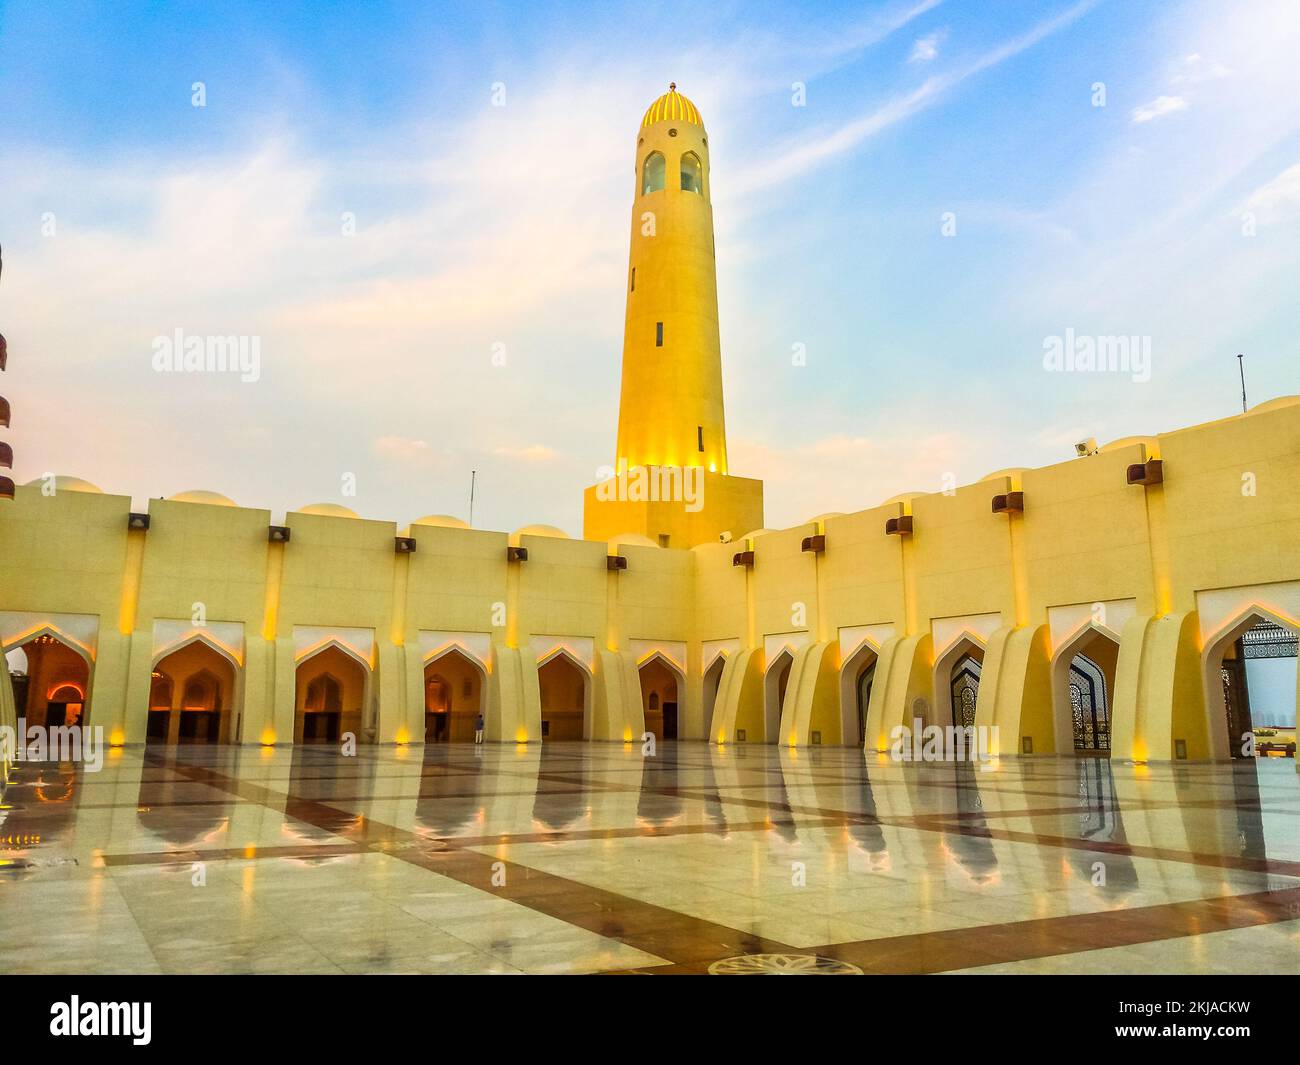 Doha, Katar - 21. Februar 2019: Innenhof mit Minarett und Kuppeln in der Abenddämmerung. Imam Abdul Wahhab Moschee oder Katar State Moschee in der Mitte Stockfoto